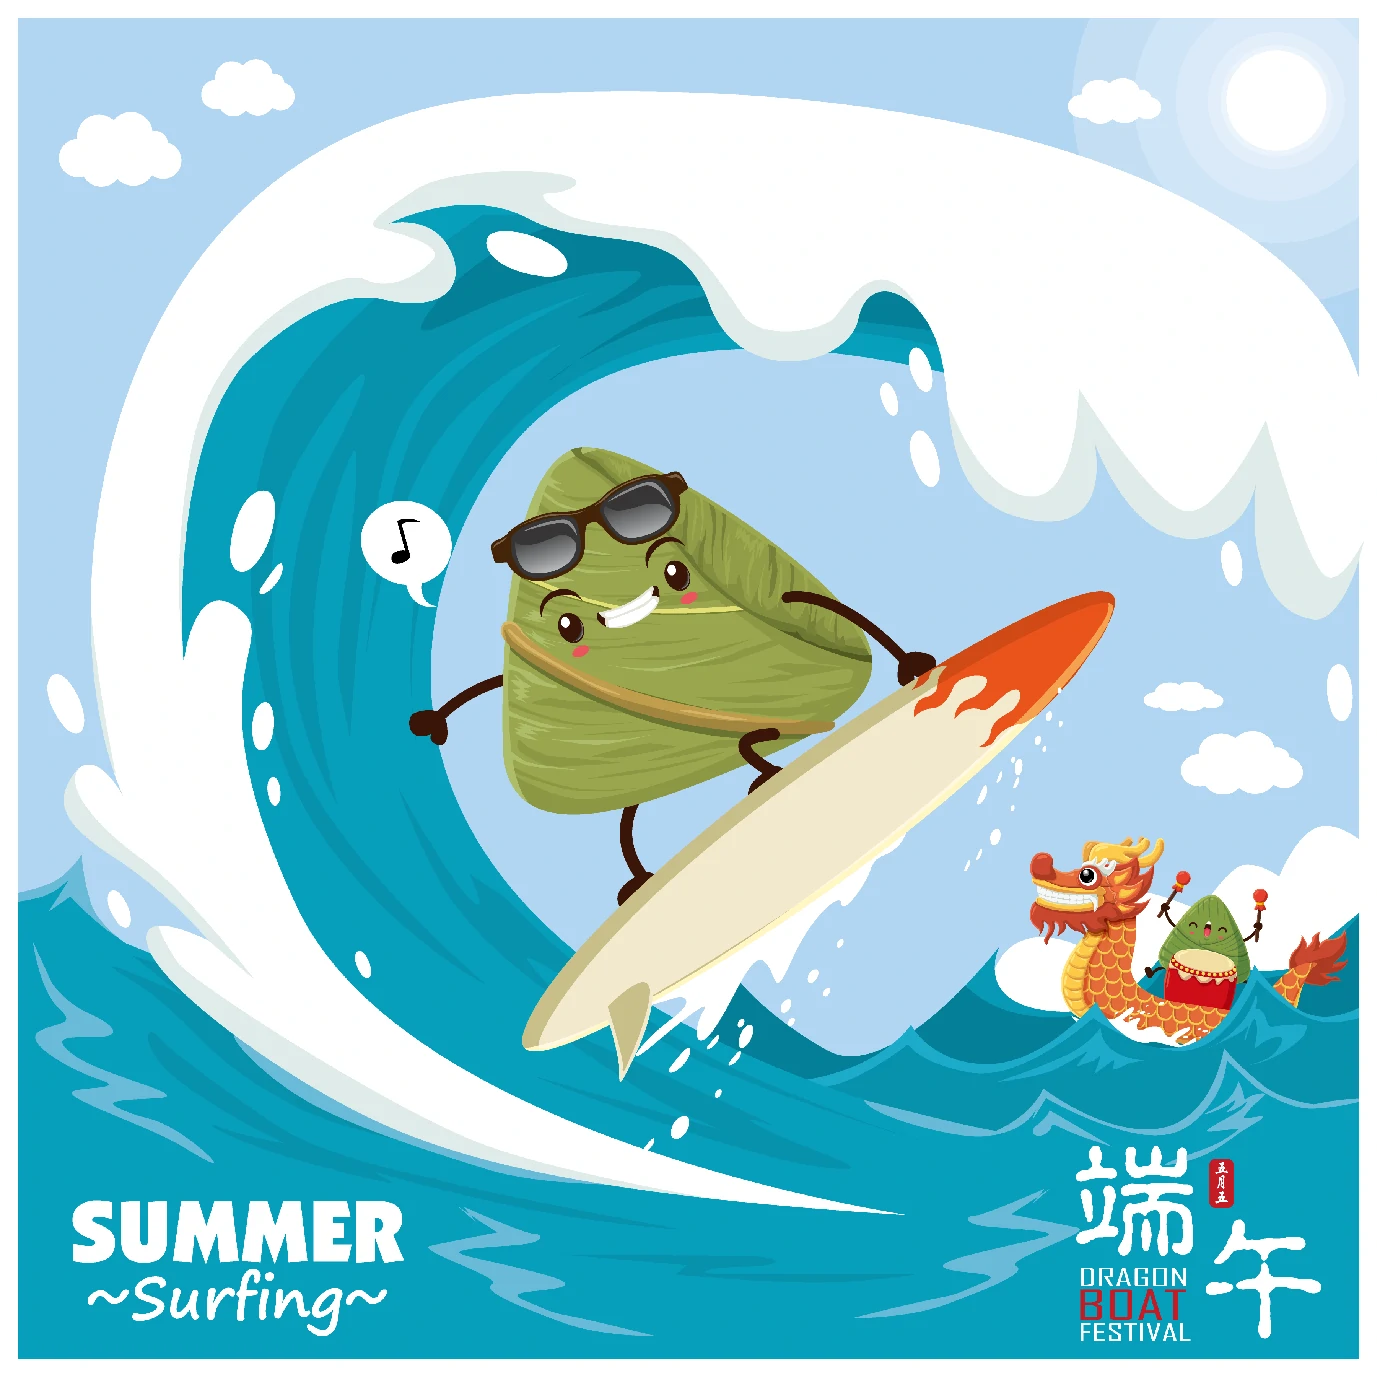 中国传统节日卡通手绘端午节赛龙舟粽子插画海报AI矢量设计素材【025】